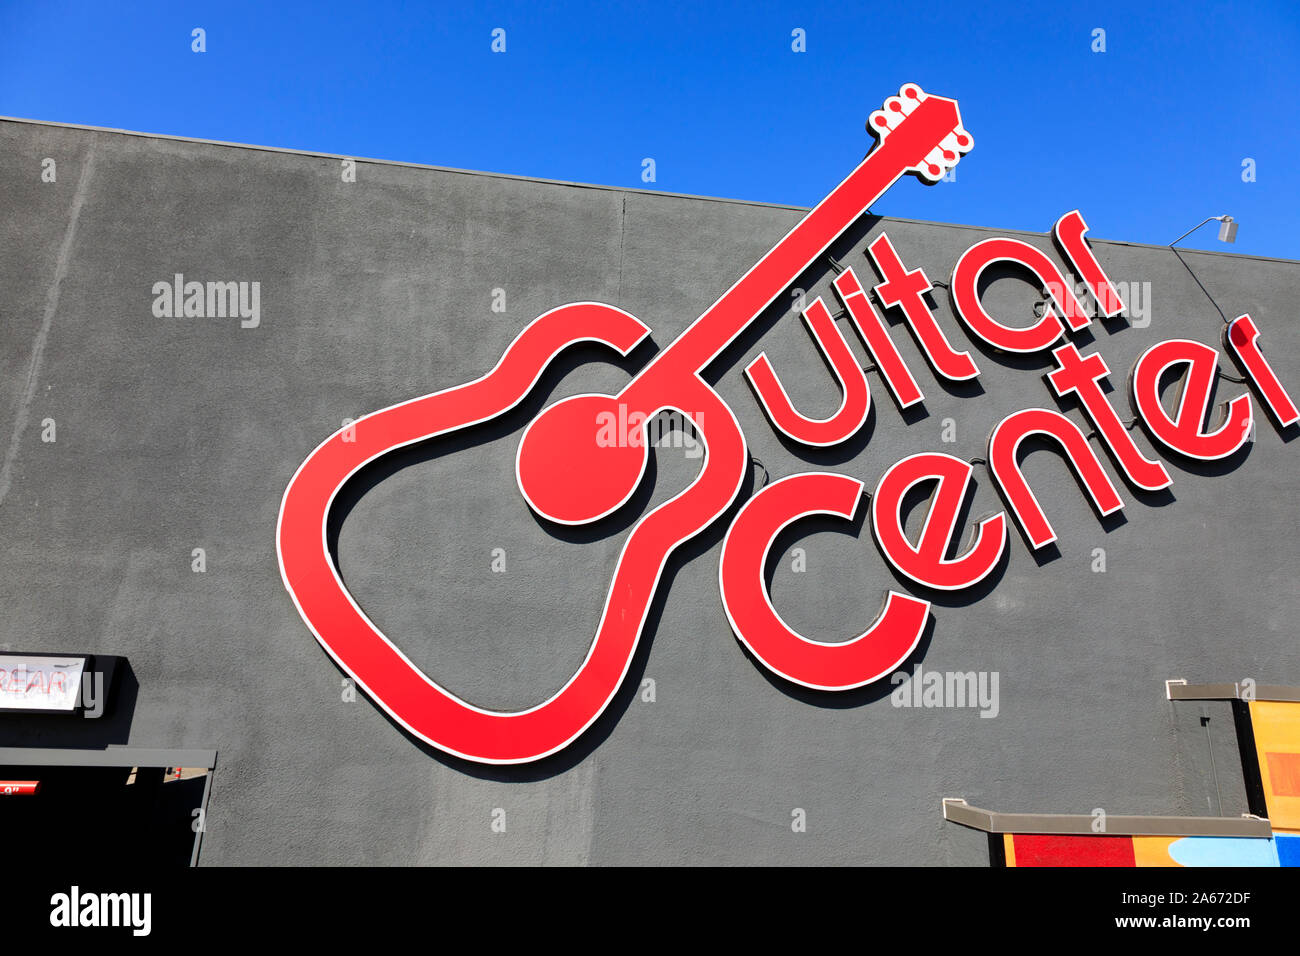 Centre de guitare, instrument de musique détaillant, Hollywood, Los Angeles, Californie, États-Unis d'Amérique. Octobre 2019 Banque D'Images